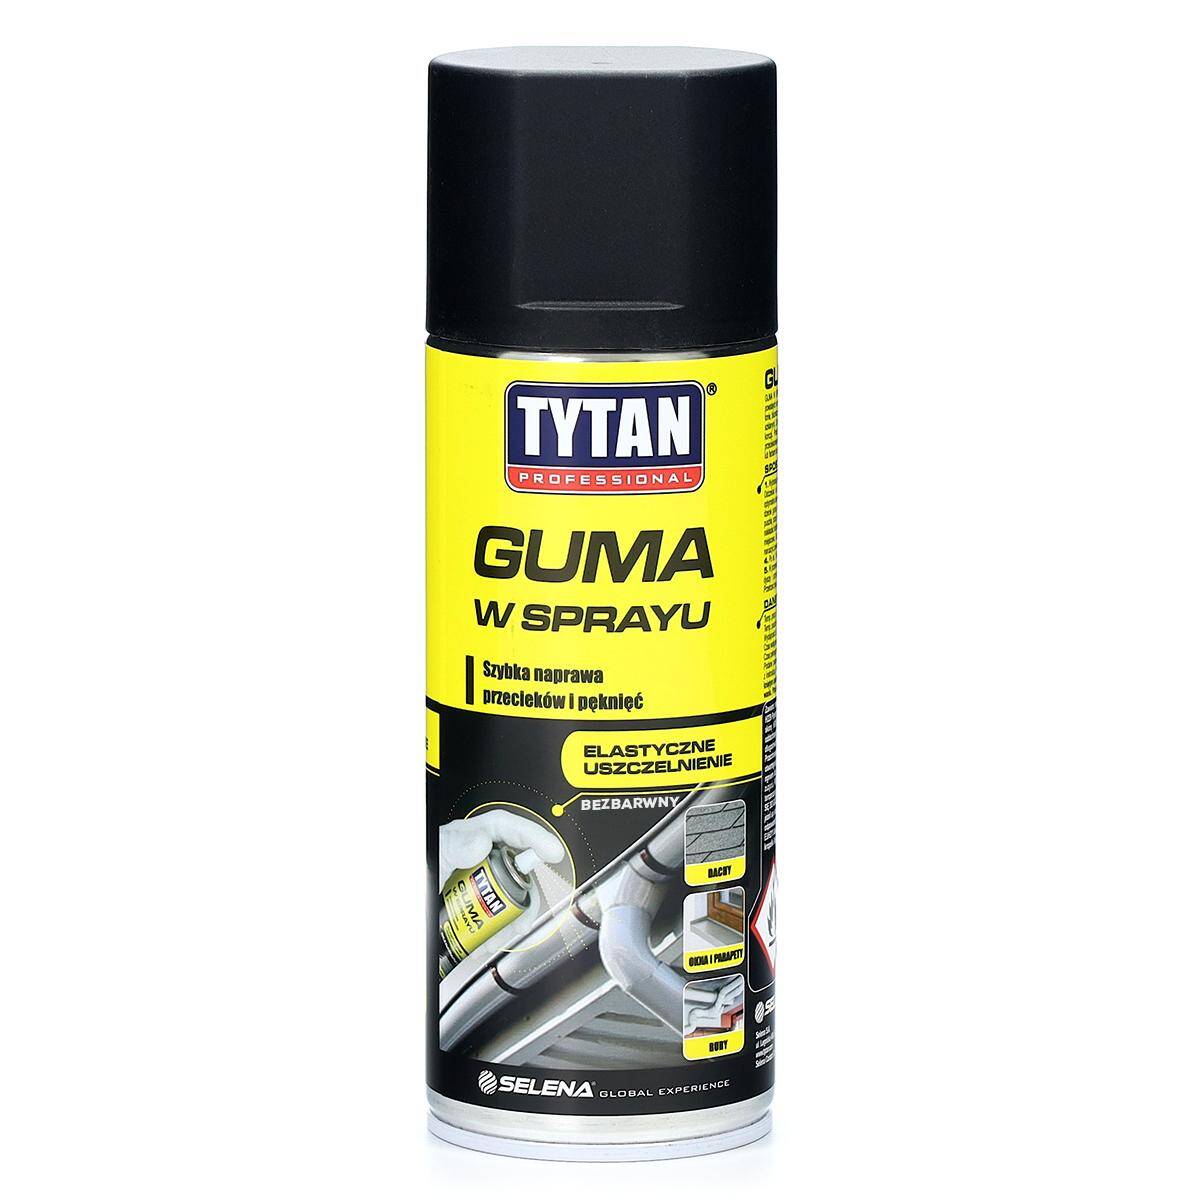 Guma w sprayu TYTAN Professional 400 ml bezbarwna uszczelniacz szybka naprawa